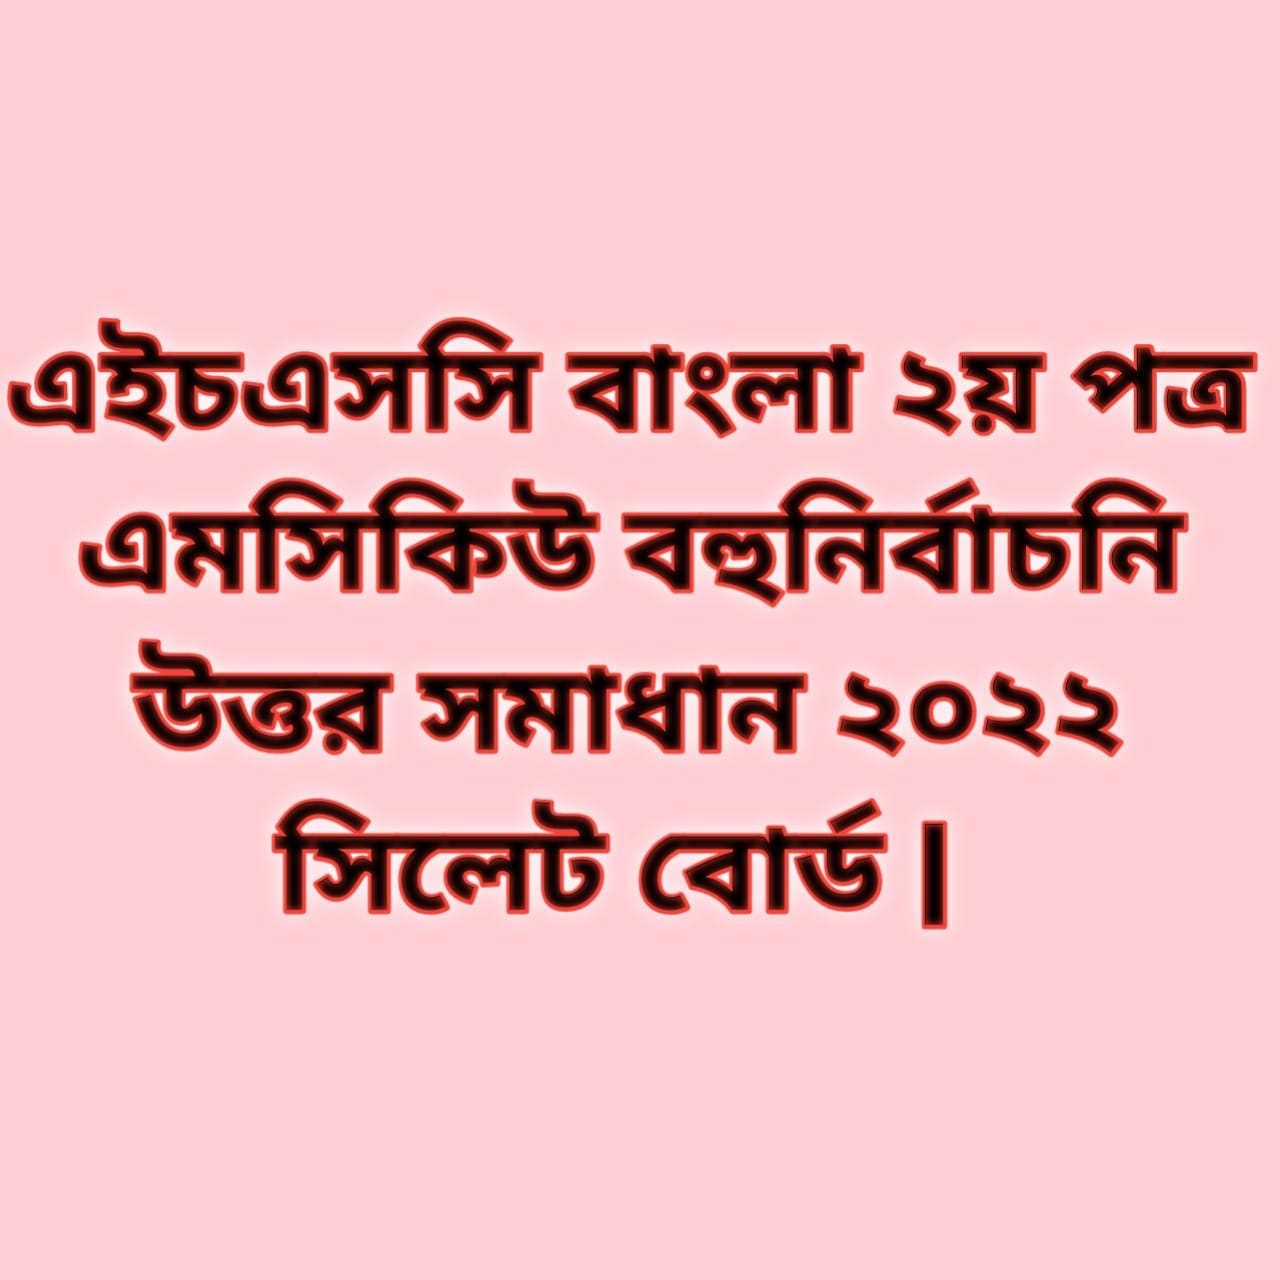 এইচএসসি বাংলা ২য় পত্র এমসিকিউ নৈব্যন্তিক বহুনির্বাচনি প্রশ্ন উত্তর সমাধান ২০২২ সিলেট বোর্ড, hsc Bangla 2nd paper mcq question solution answer 2022 Sylhet Board